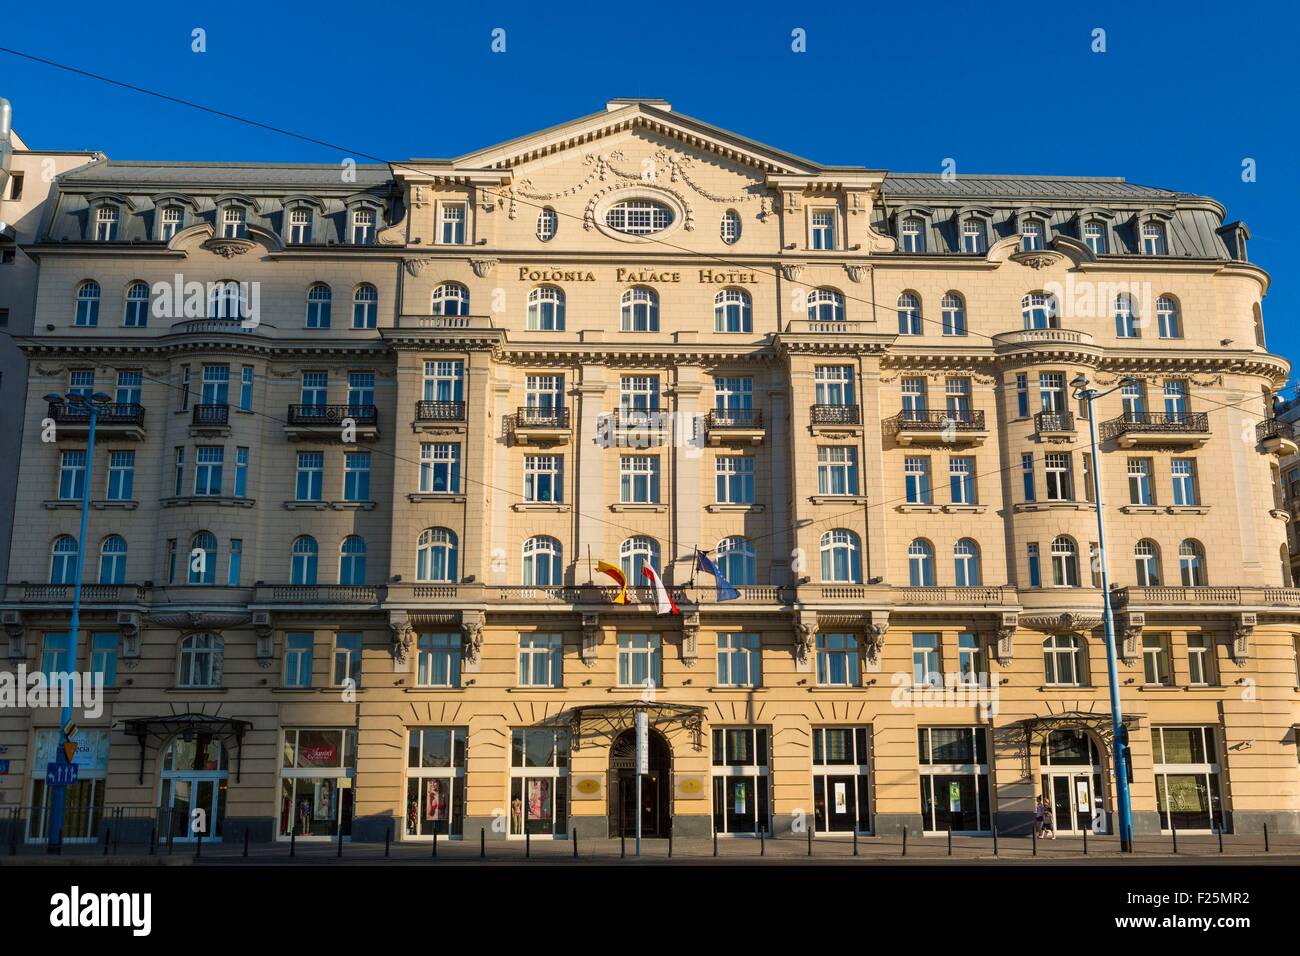 Poland, Mazovia region, Warsaw, new city, Polonia Palace Hotel Stock Photo